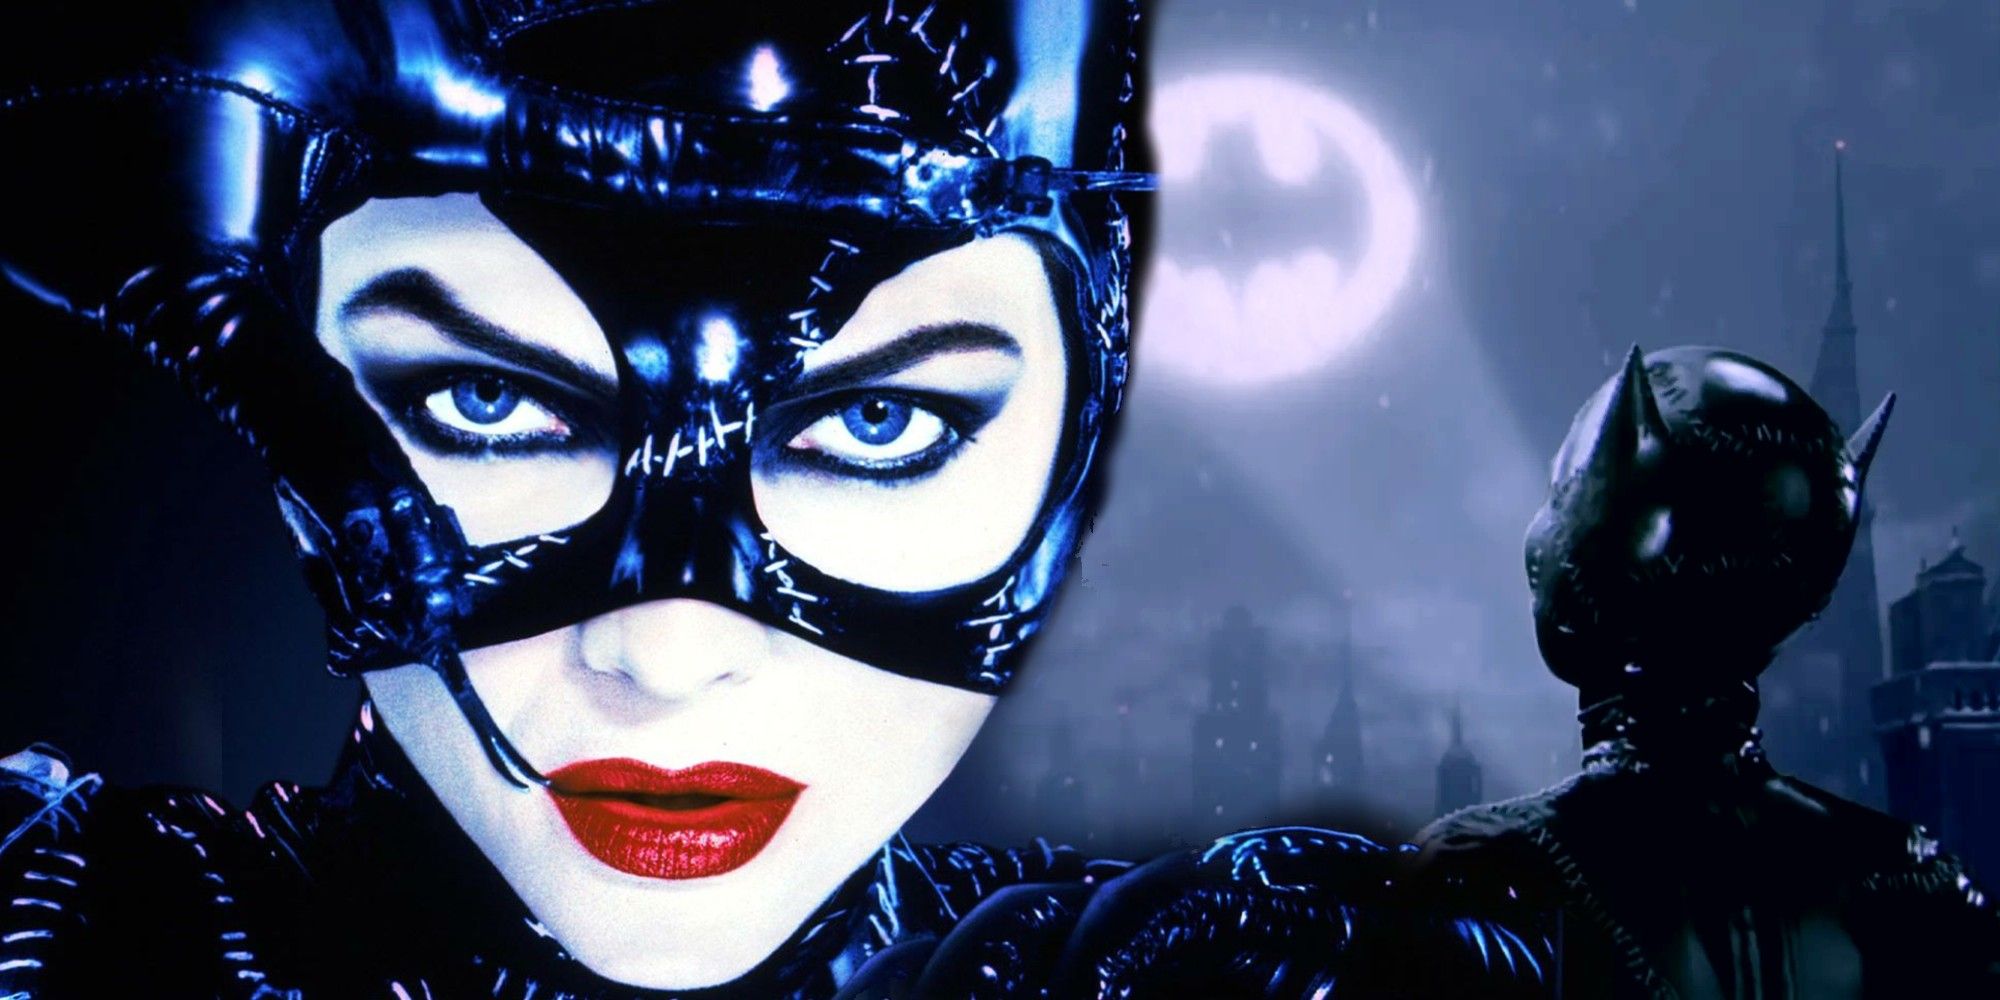 El increíble superpoder de Catwoman en BATMAN RETURNS viene con un giro oscuro y peligroso